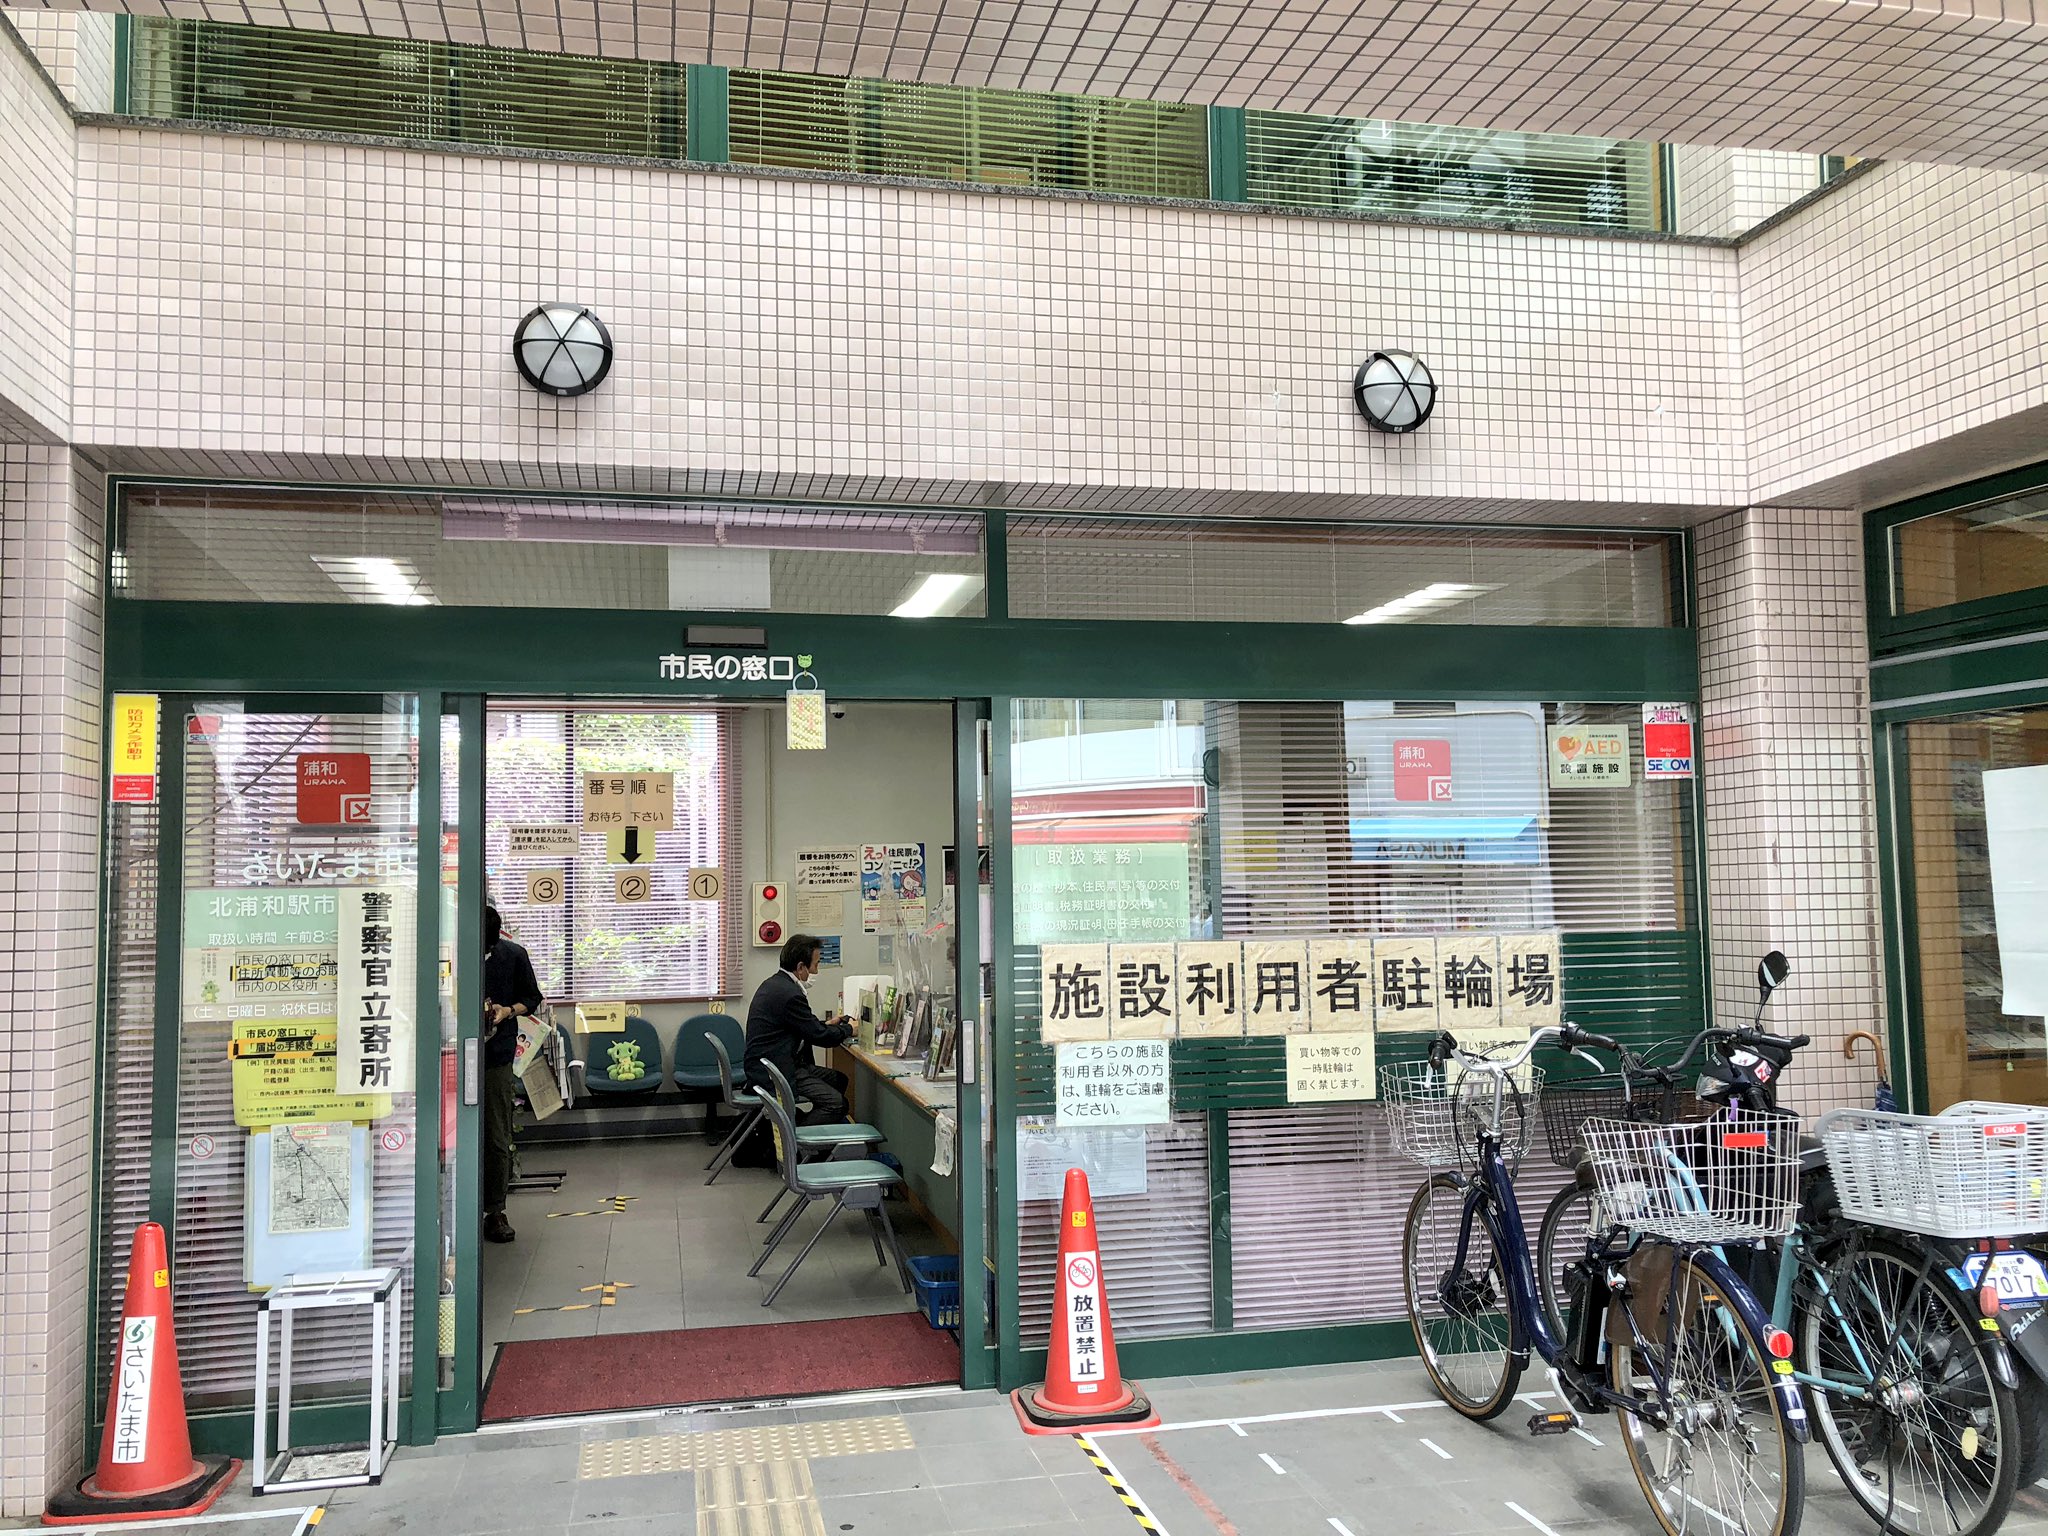 ট ইট র 北浦和info 北浦和駅東口市民の窓口にも マスク回収ボックス設置されていました 小学校に届けられるそうです